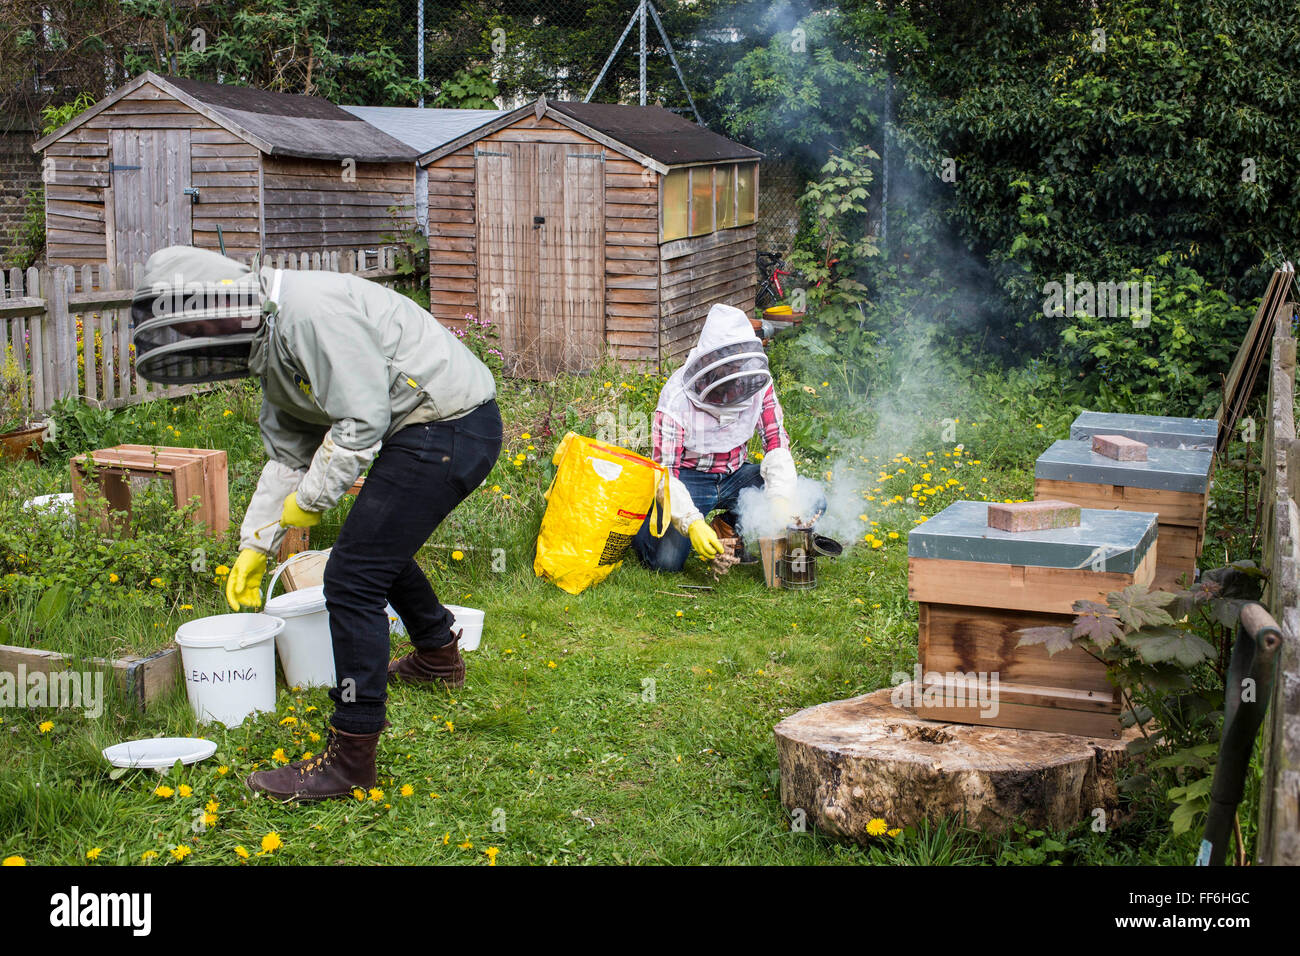 Bee keeper con un fumador para calmar a las abejas antes openng de las colmenas. La apicultura urbana, proyecto de jardín comunitario, George Downing Estate, Hackney, Este de Londres. Foto de stock